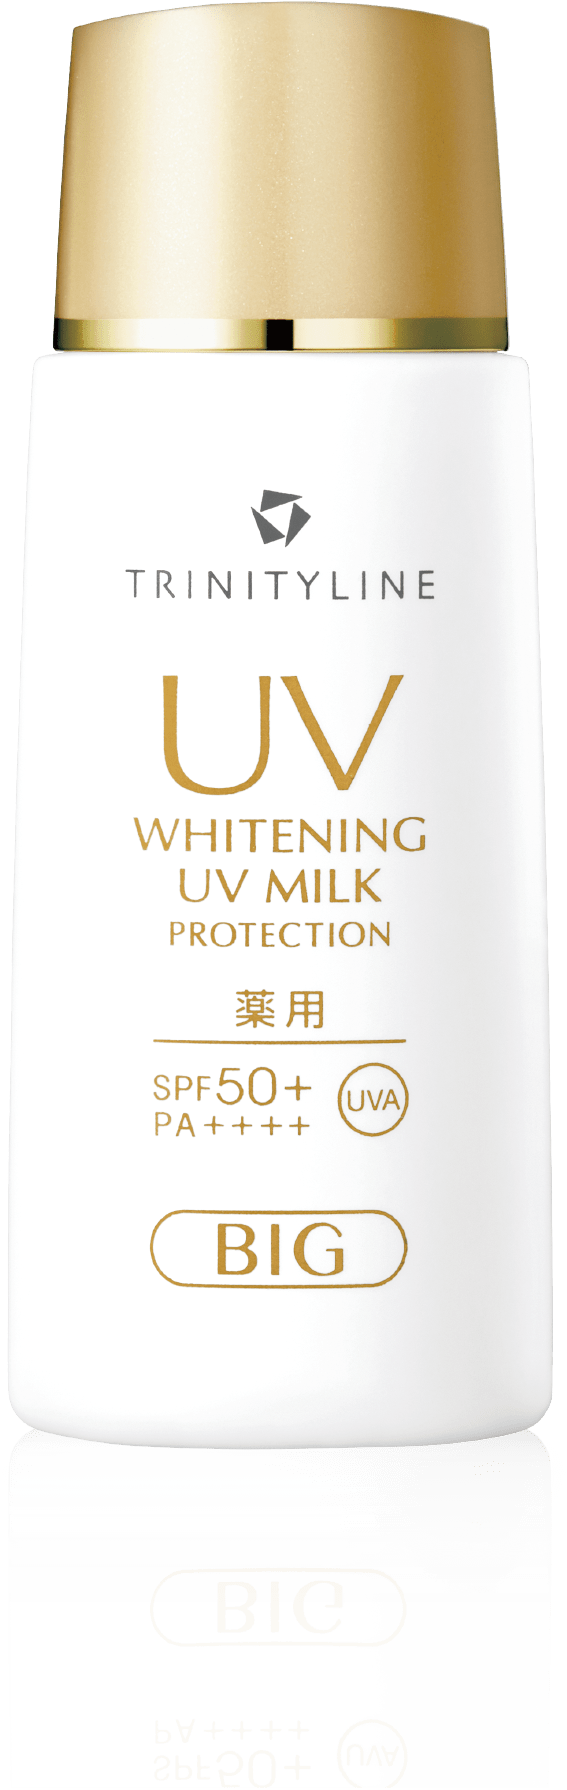 薬用ホワイトニングUVミルクプロテクション ビッグサイズ販売